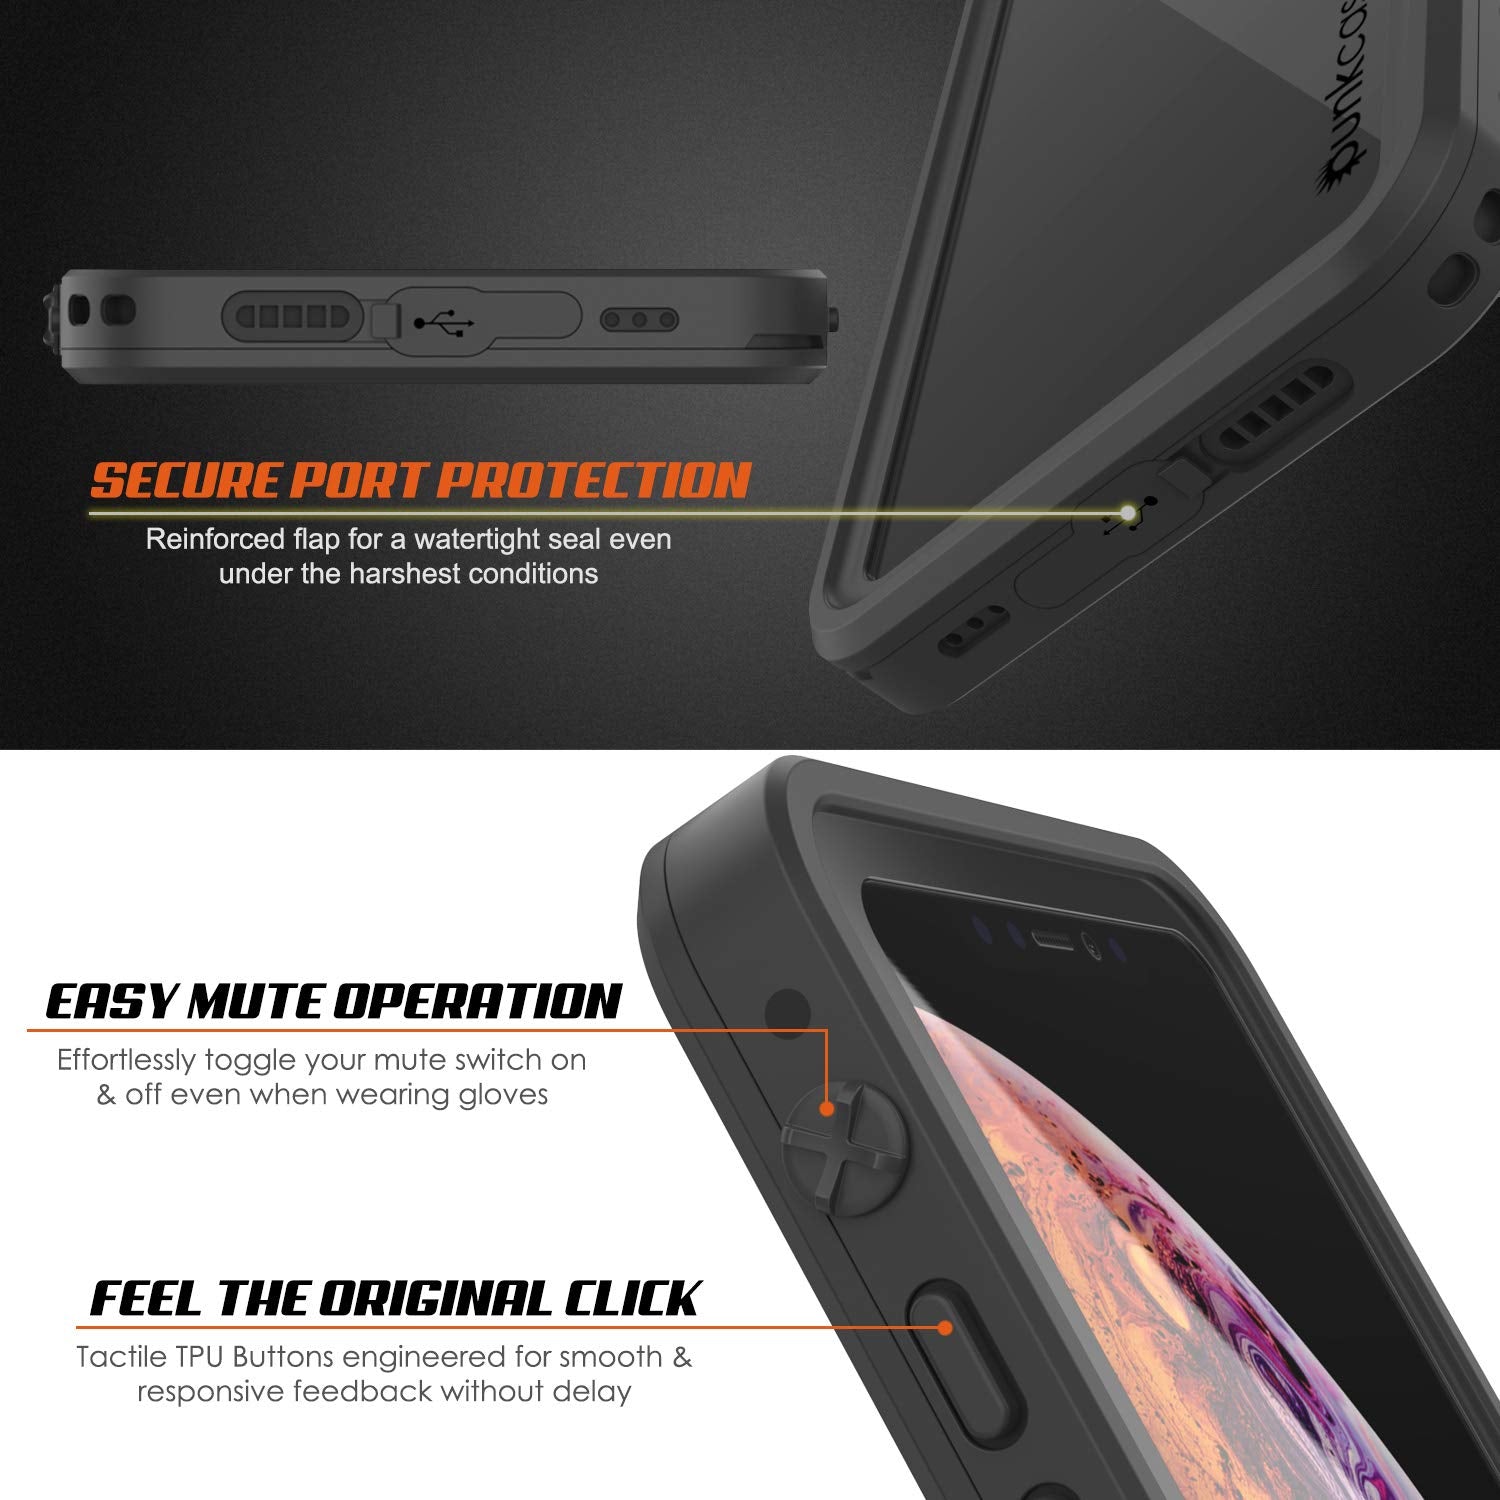 iPhone XS Max Waterproof IP68 Case, Punkcase [Clear] [StudStar Series] [Slim Fit] [Dirtproof]